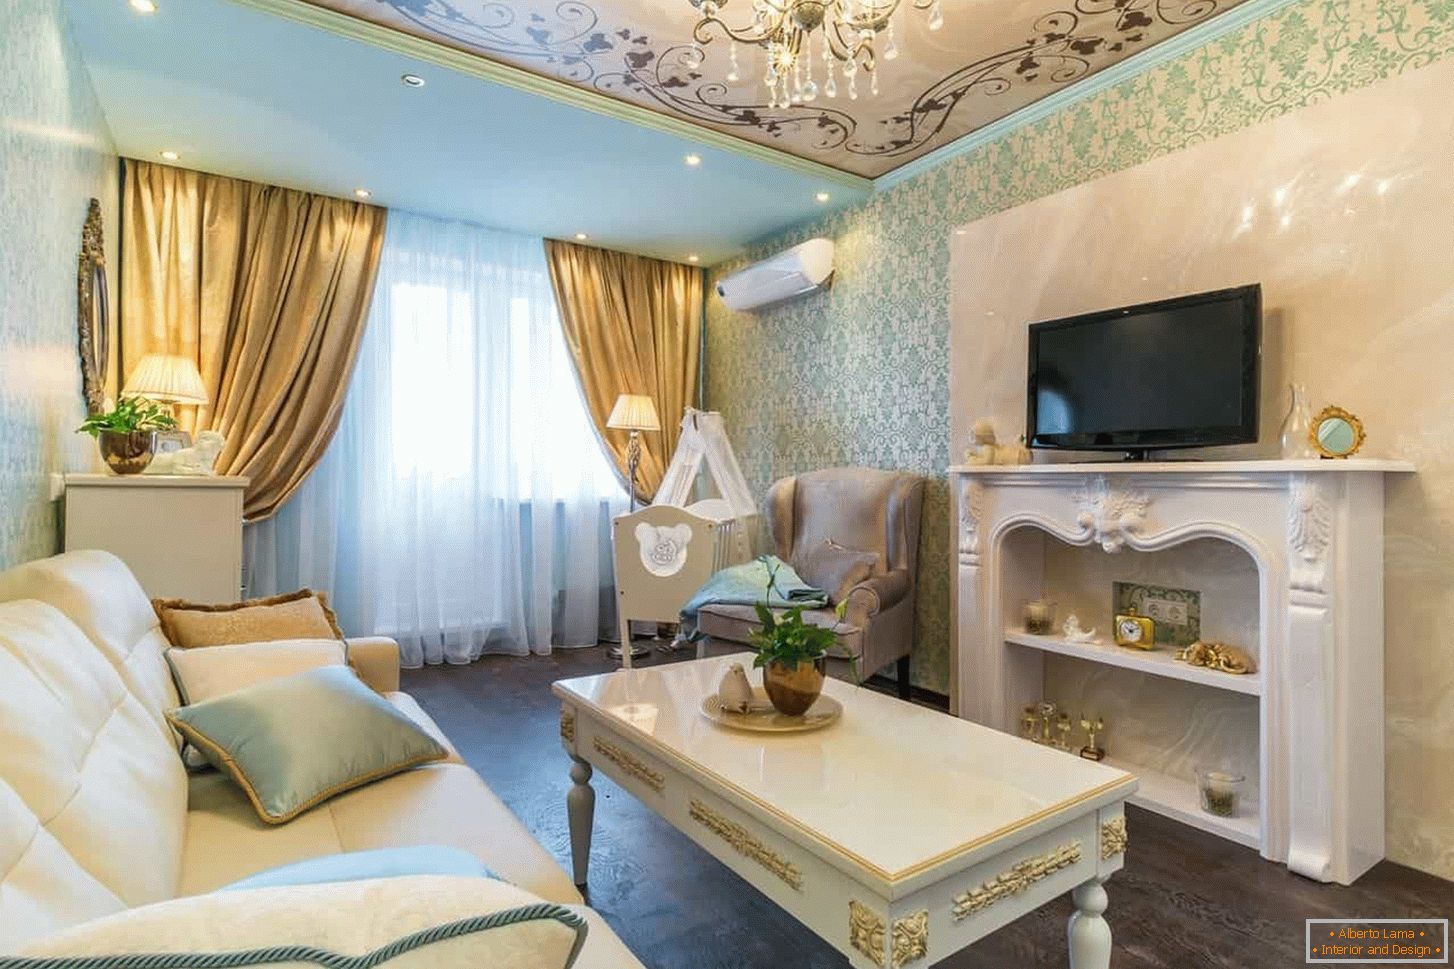 Wohnzimmer im klassischen Stil mit Gold-Finish, Deckenverzierung